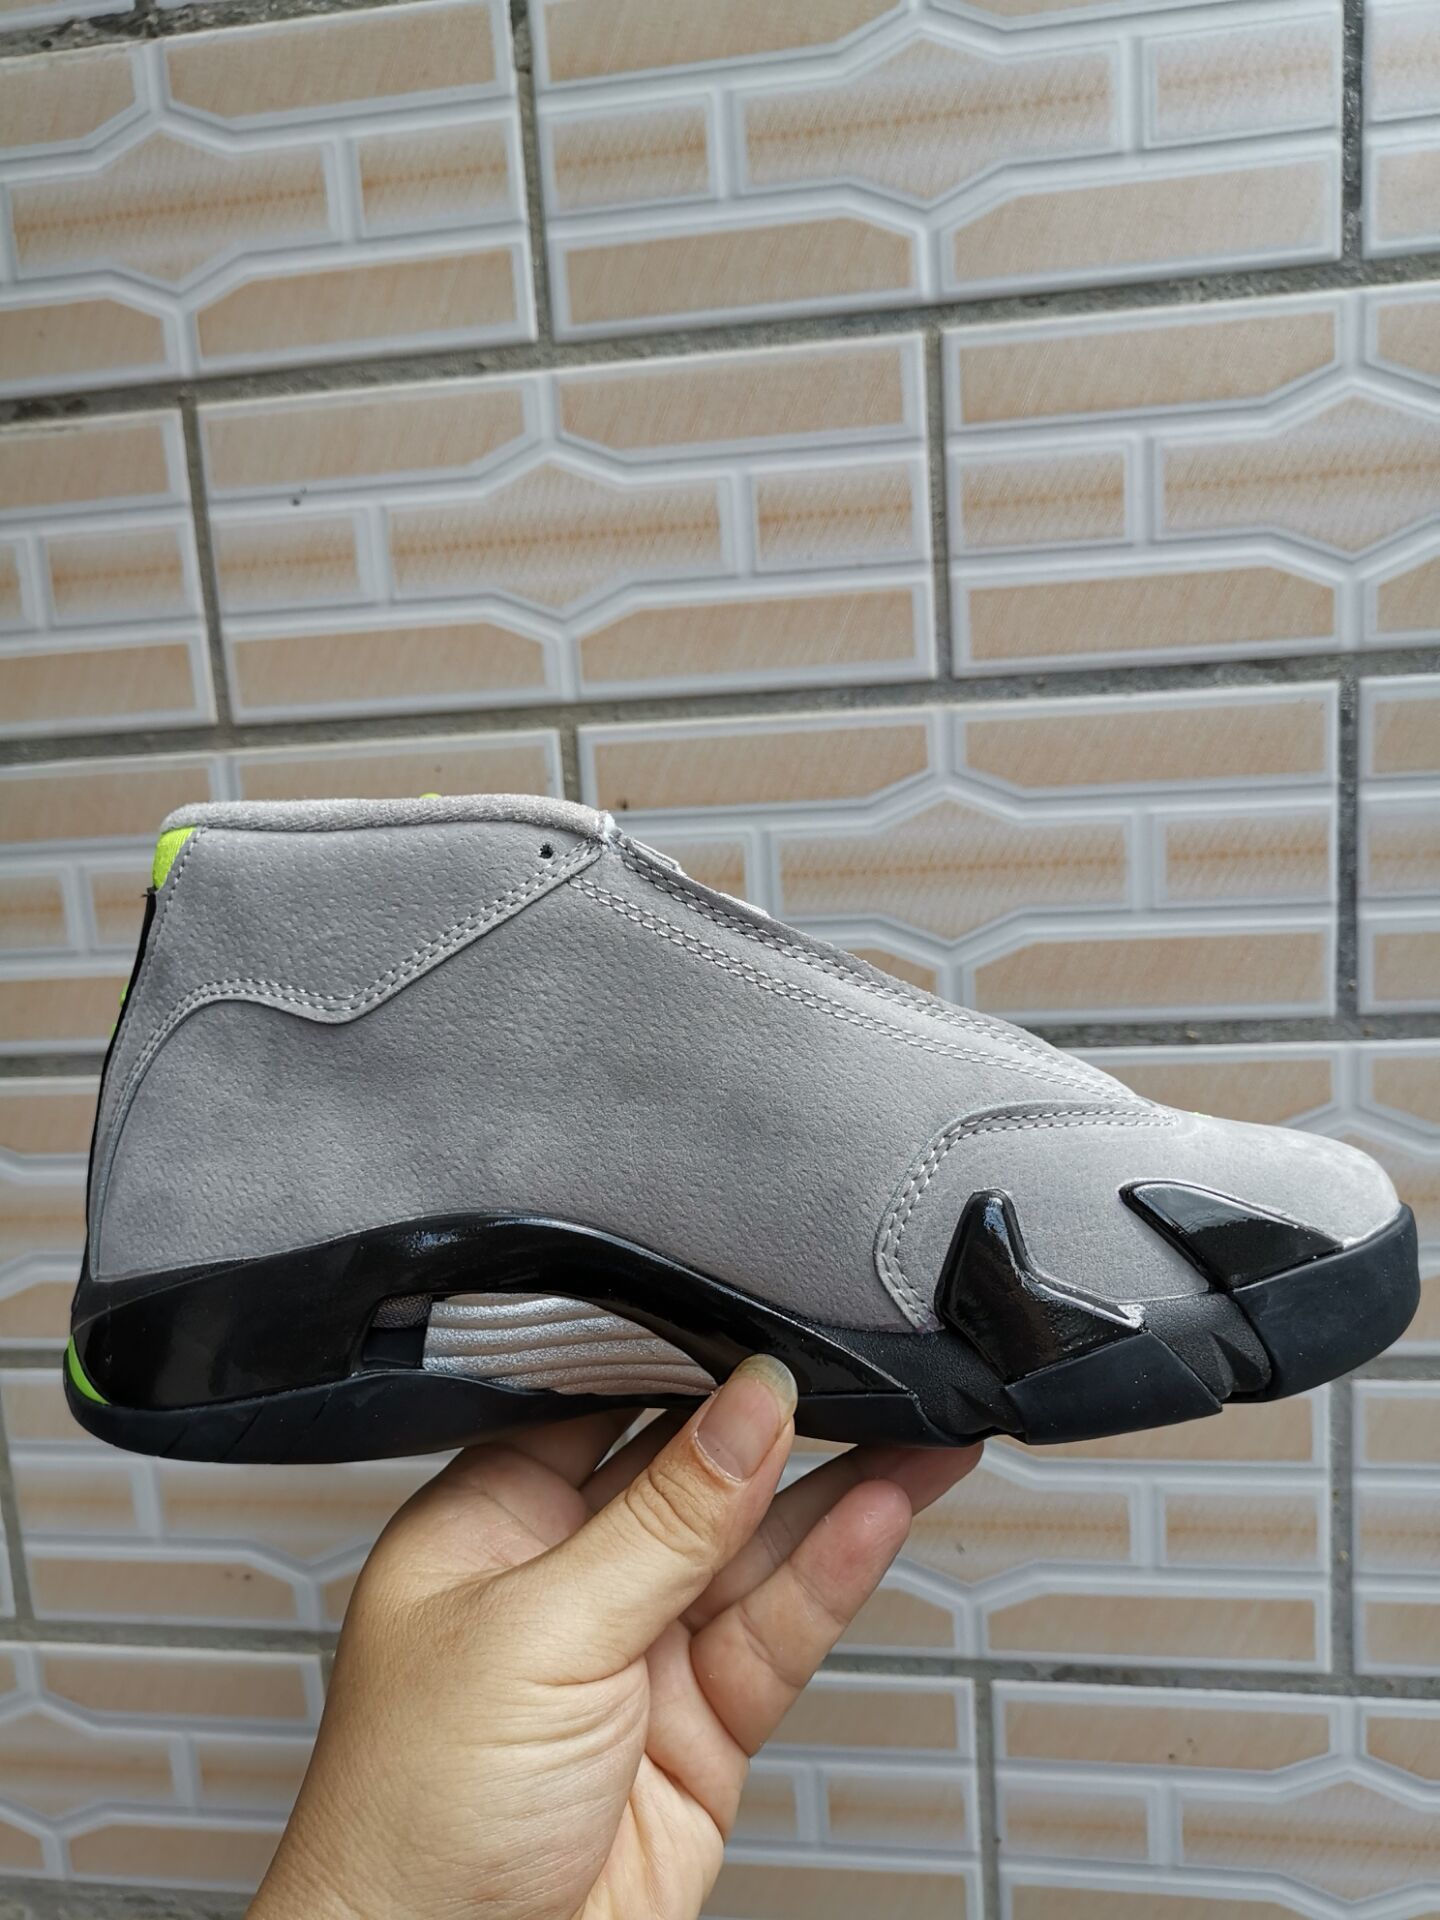 2019 Air Jordan 14 Grey Black Yellow Shoes